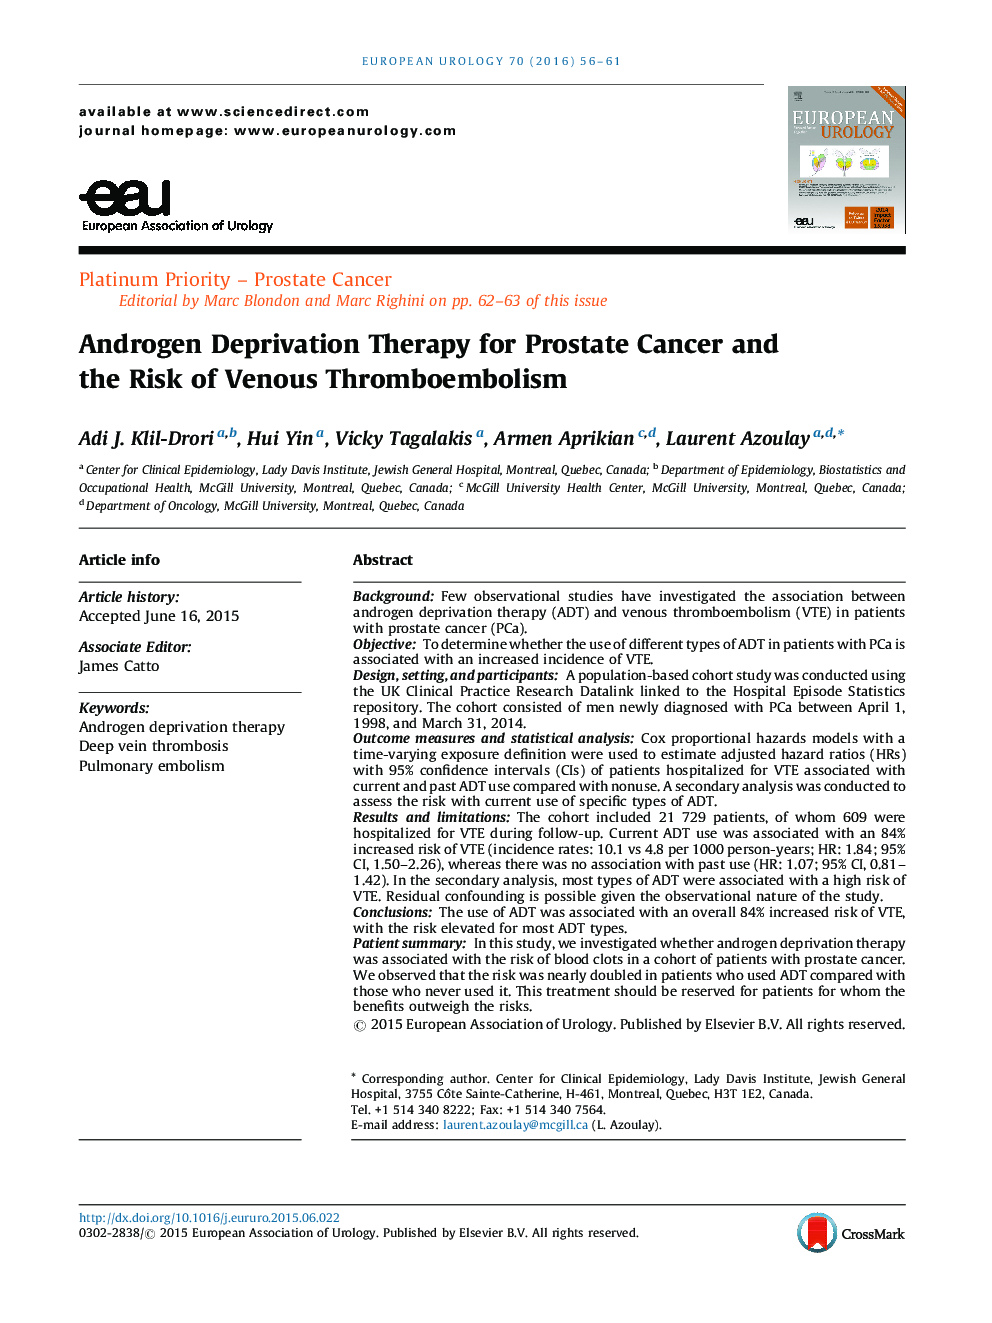 درمان محرومیت آندروژن برای سرطان پروستات و خطر ترومبوآمبولی واژینوز 